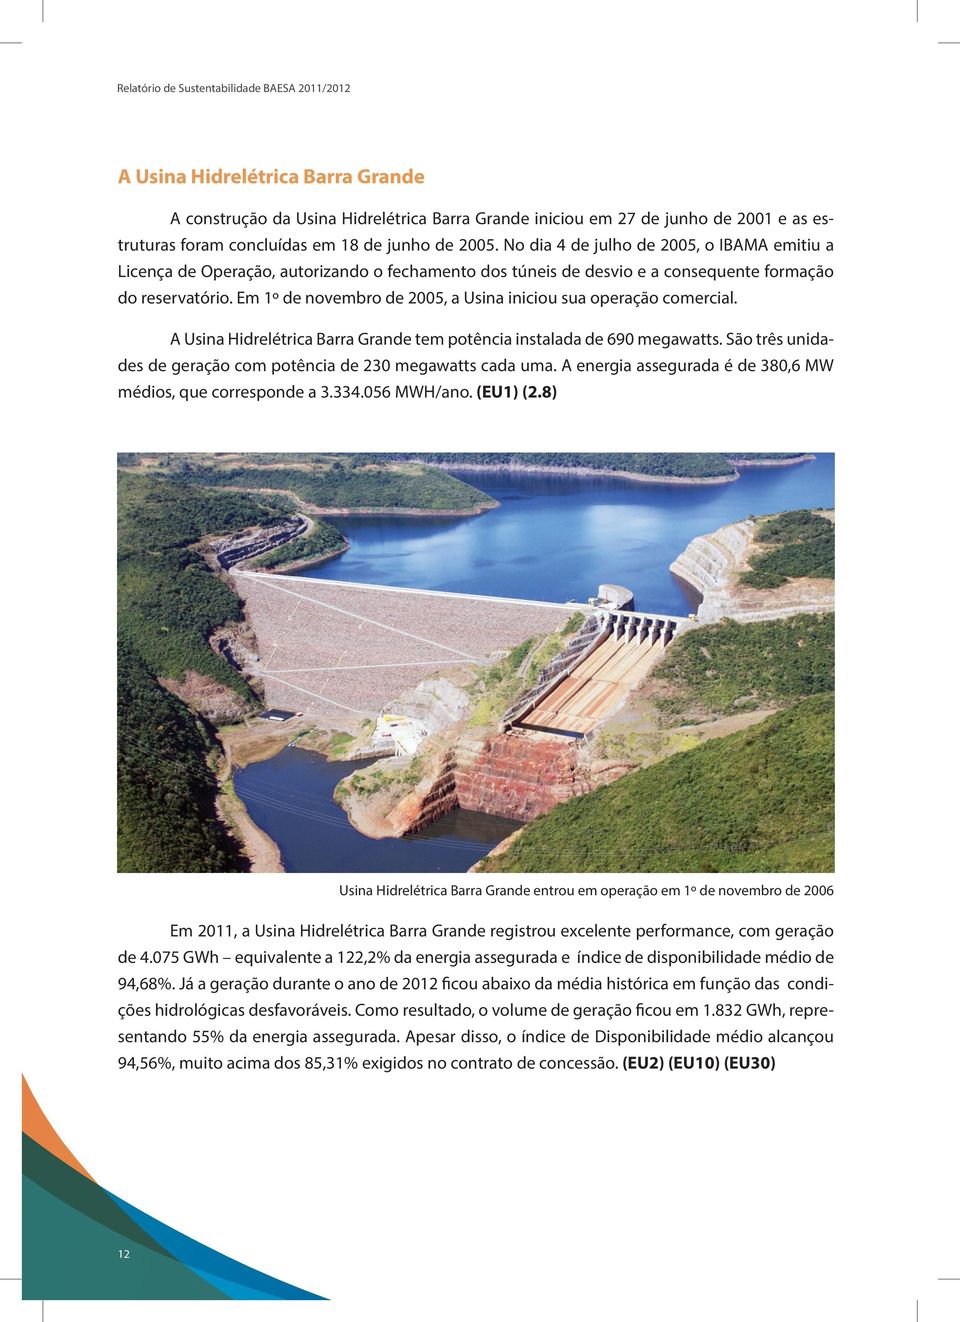 Em 1º de novembro de 2005, a Usina iniciou sua operação comercial. A Usina Hidrelétrica Barra Grande tem potência instalada de 690 megawatts.